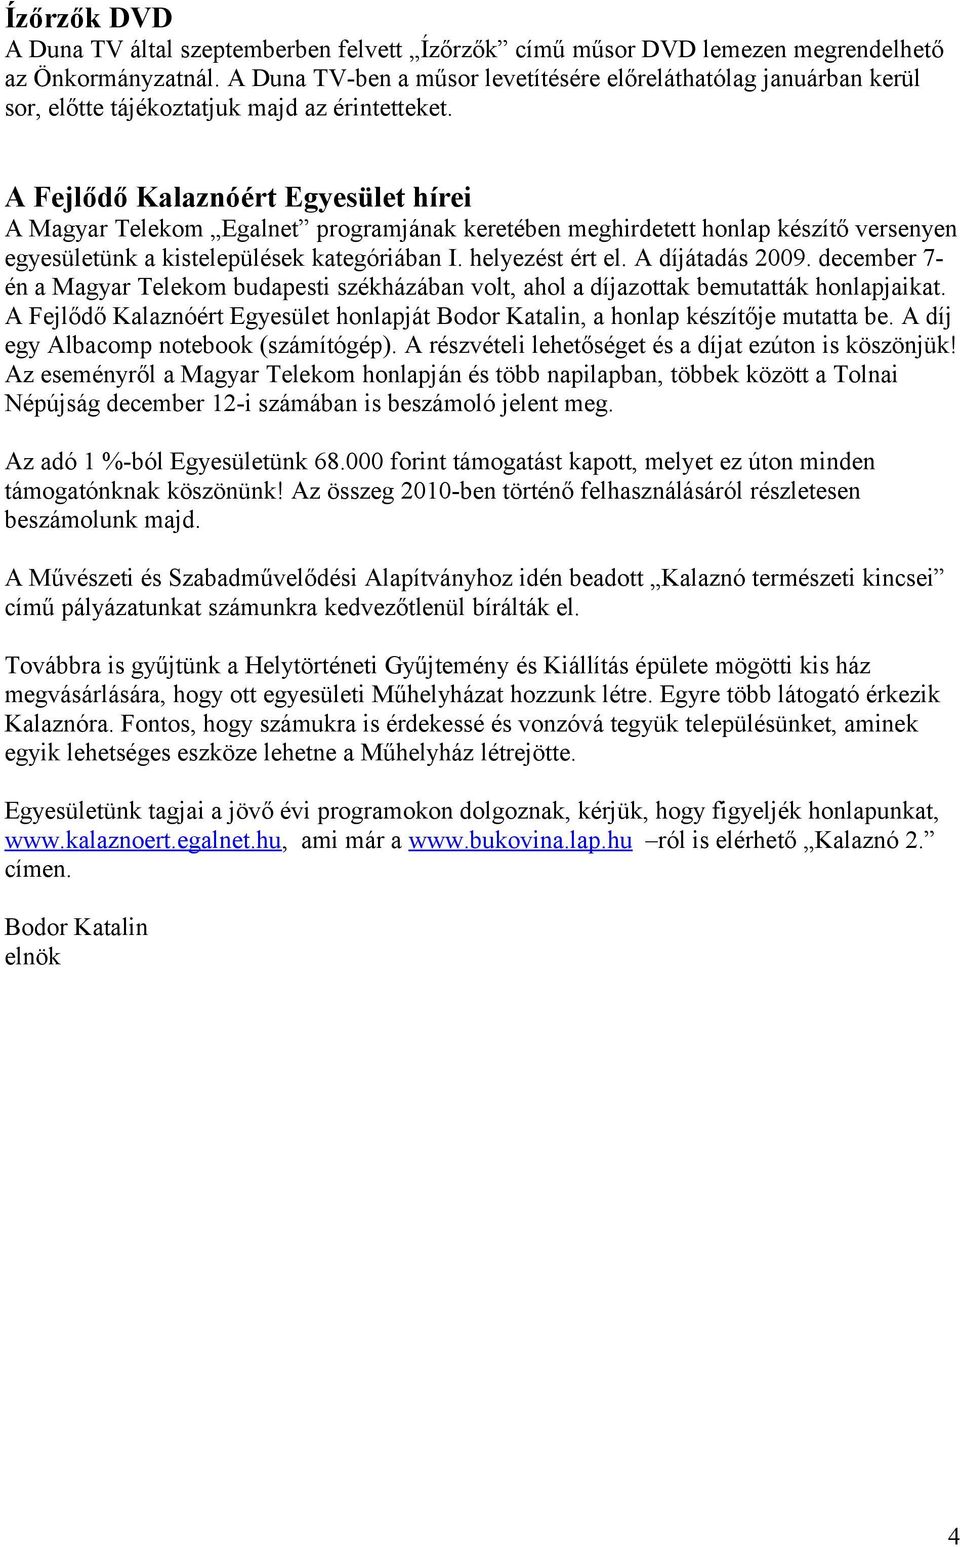 A Fejlődő Kalaznóért Egyesület hírei A Magyar Telekom Egalnet programjának keretében meghirdetett honlap készítő versenyen egyesületünk a kistelepülések kategóriában I. helyezést ért el.